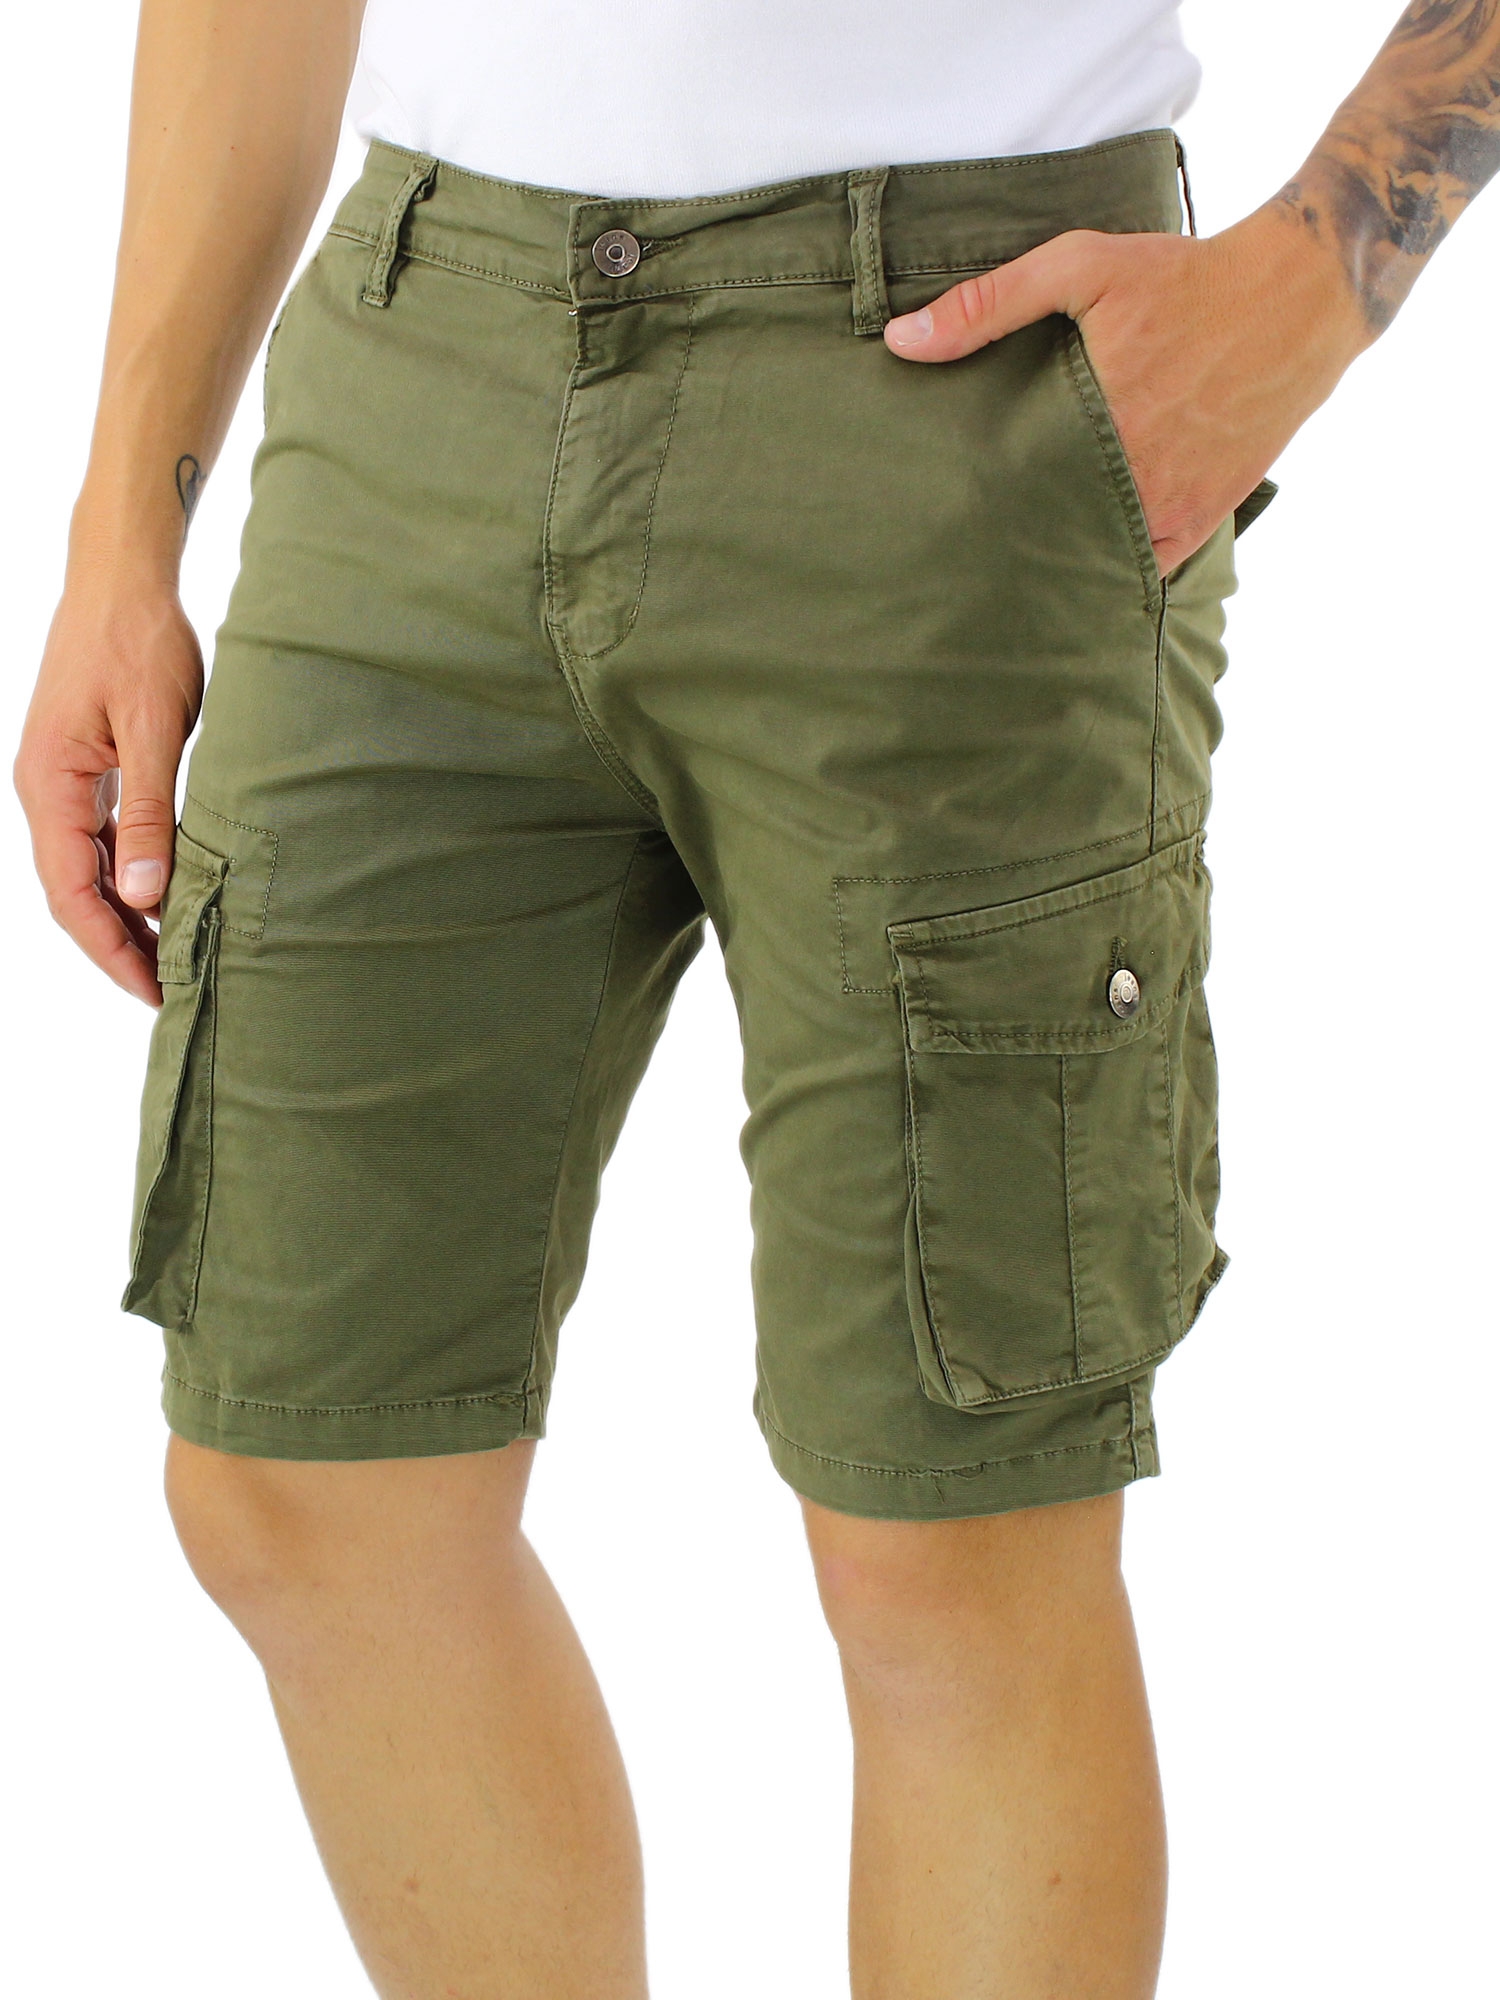 Bermuda Uomo Con Tasconi Pantalone Corto Cotone Short Jeans 42 44 46 48 50 52 54 